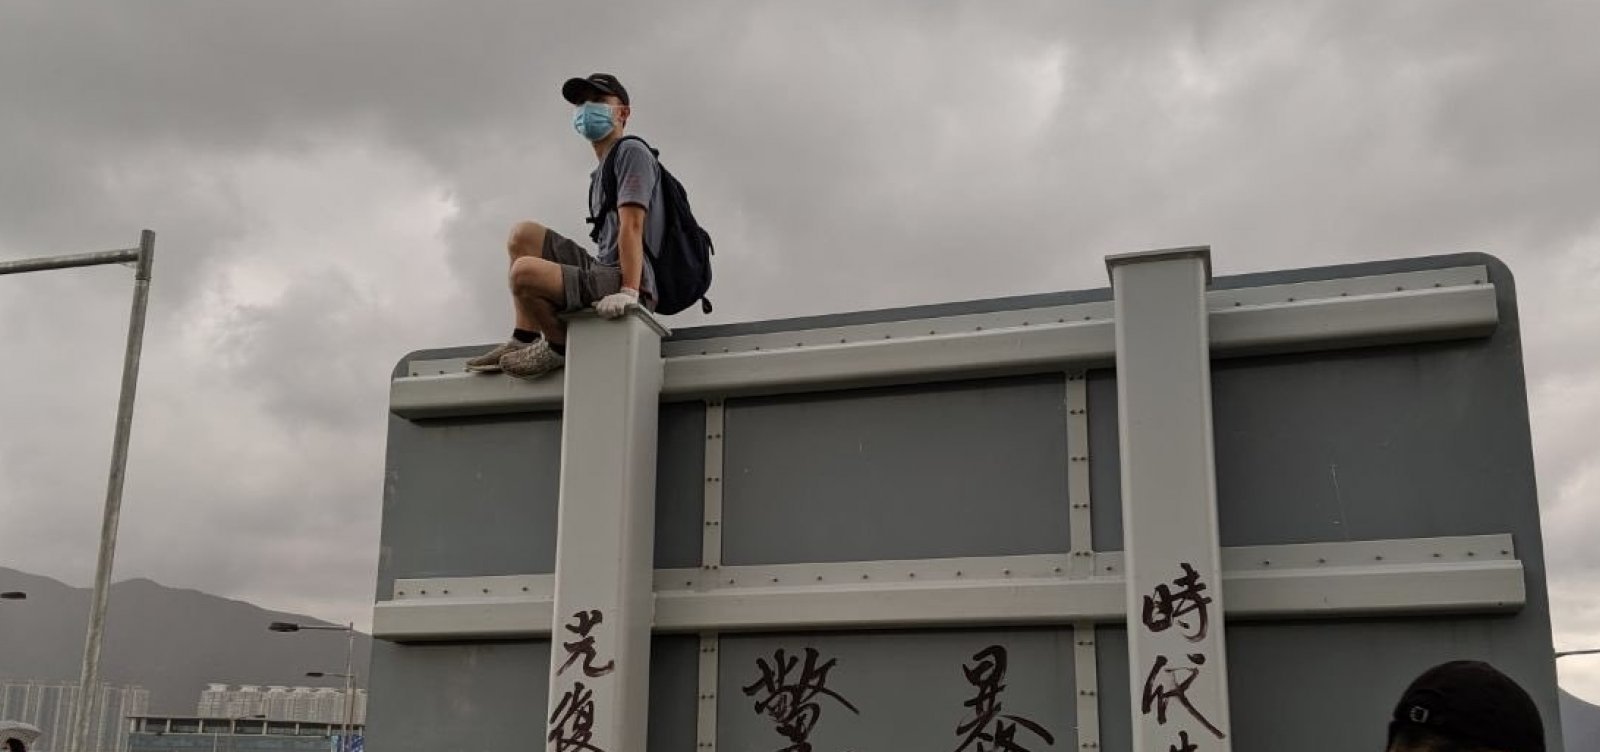 Hong Kong: Manifestantes destroem câmeras e máquinas do metrô